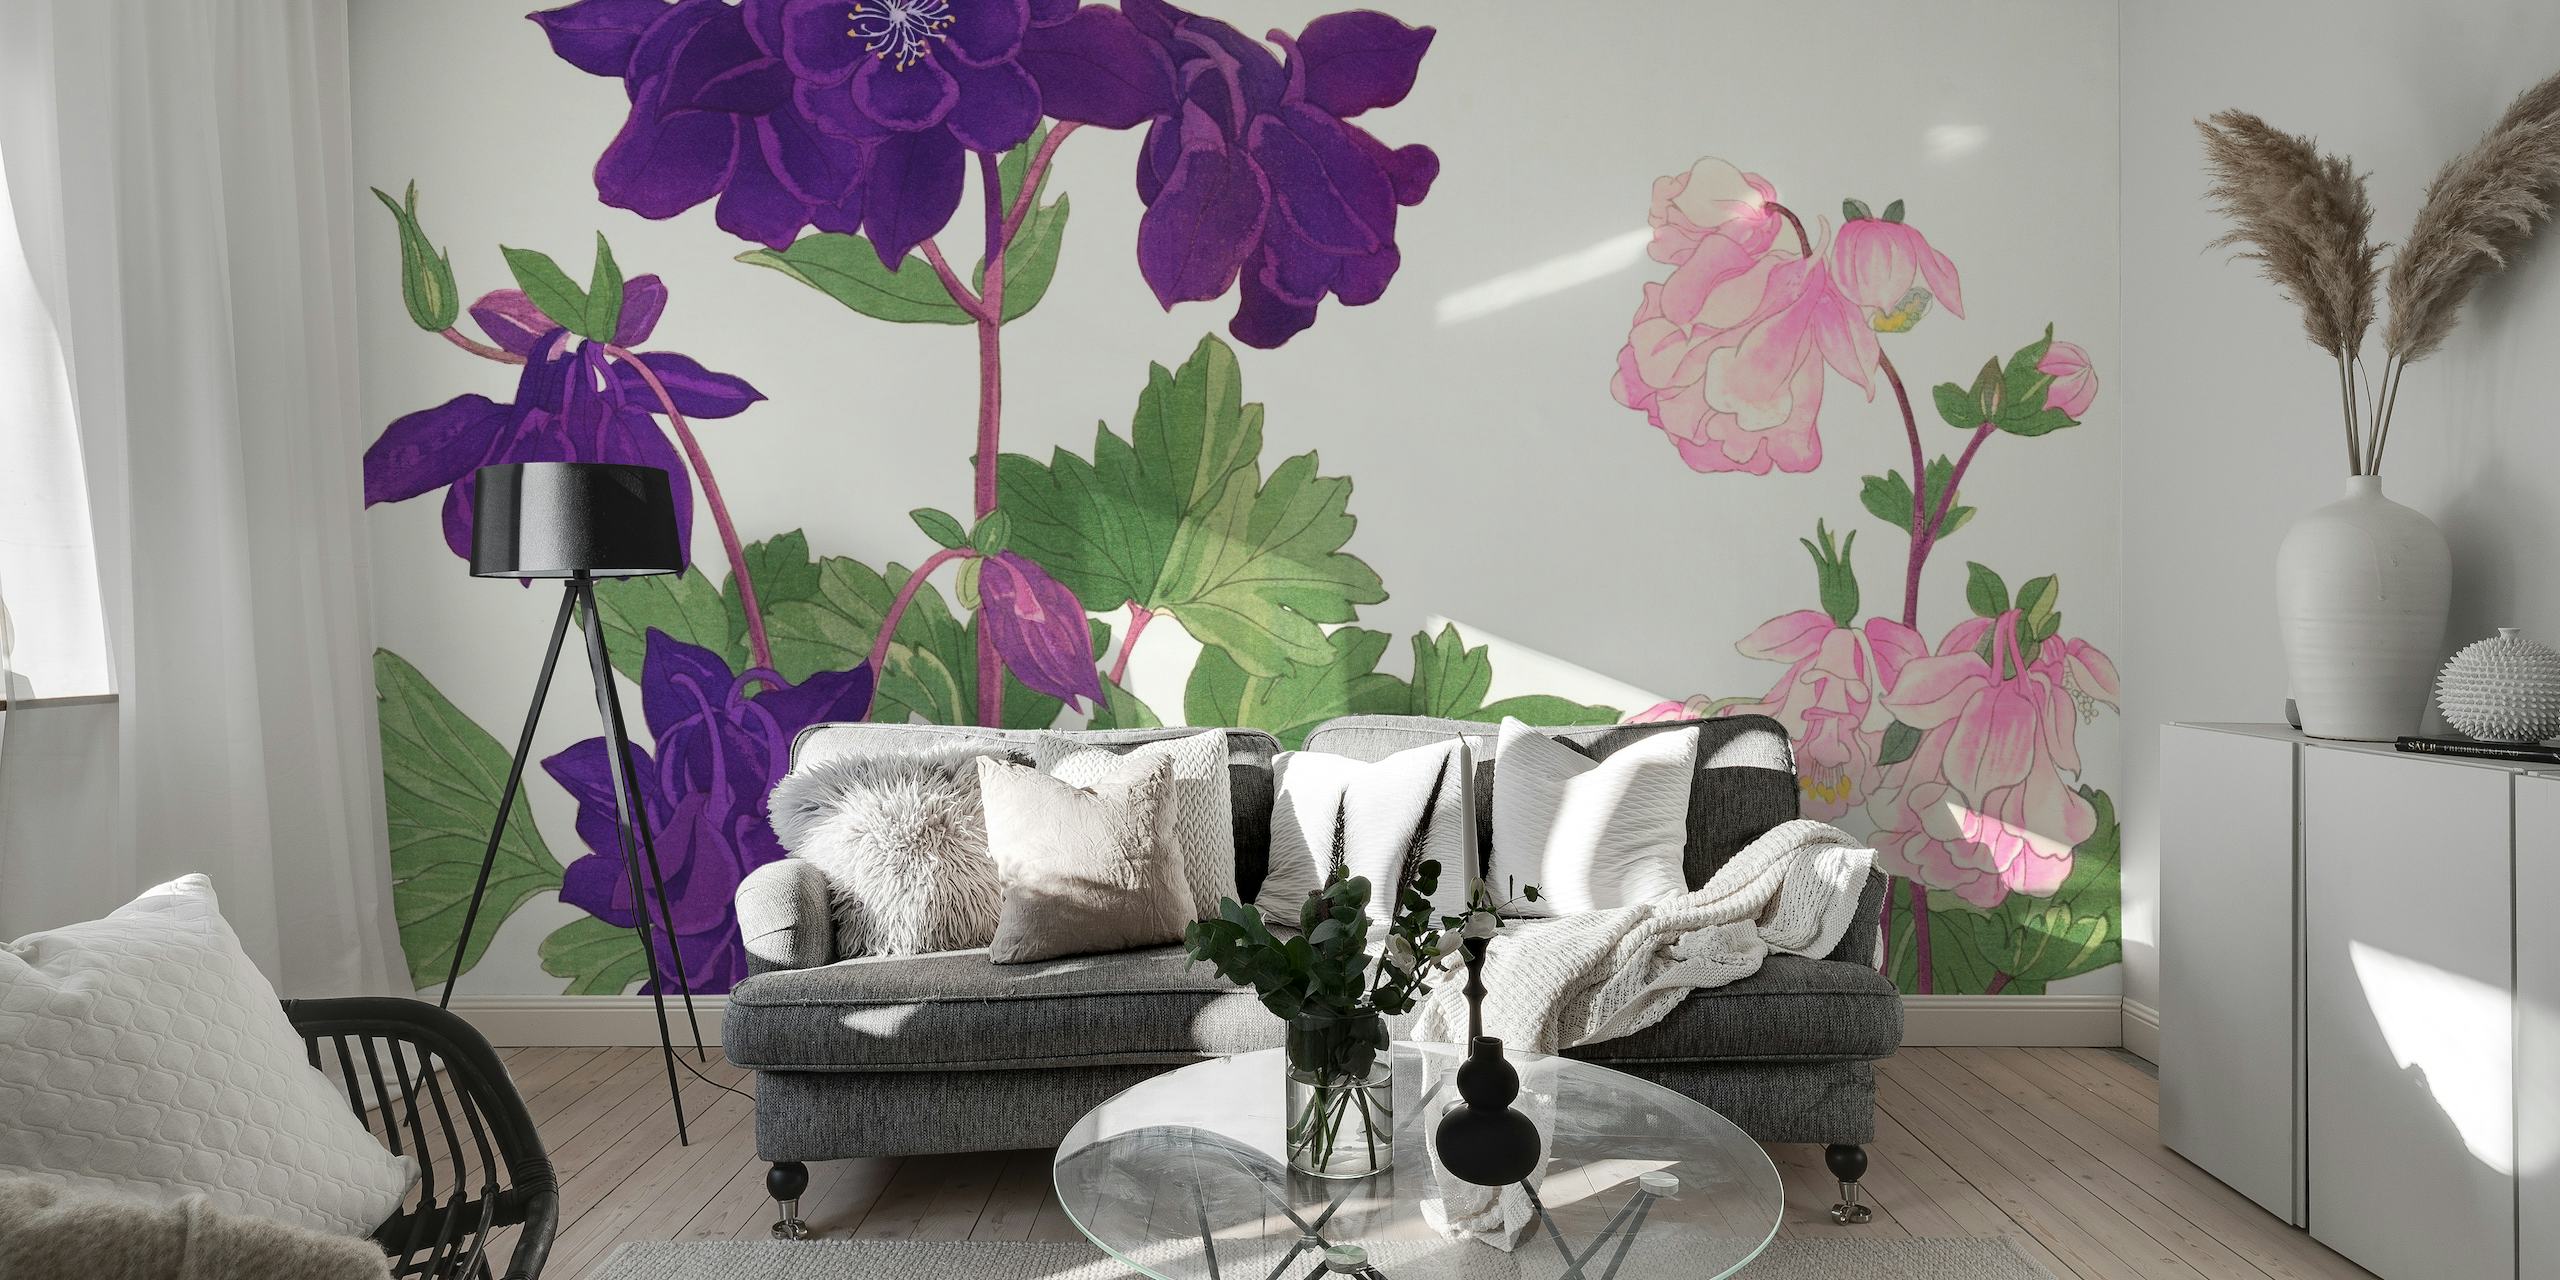 Zidna slika Scandi Gardens inspirirana skandinavskim stilom s ljubičastim i ružičastim cvjetovima